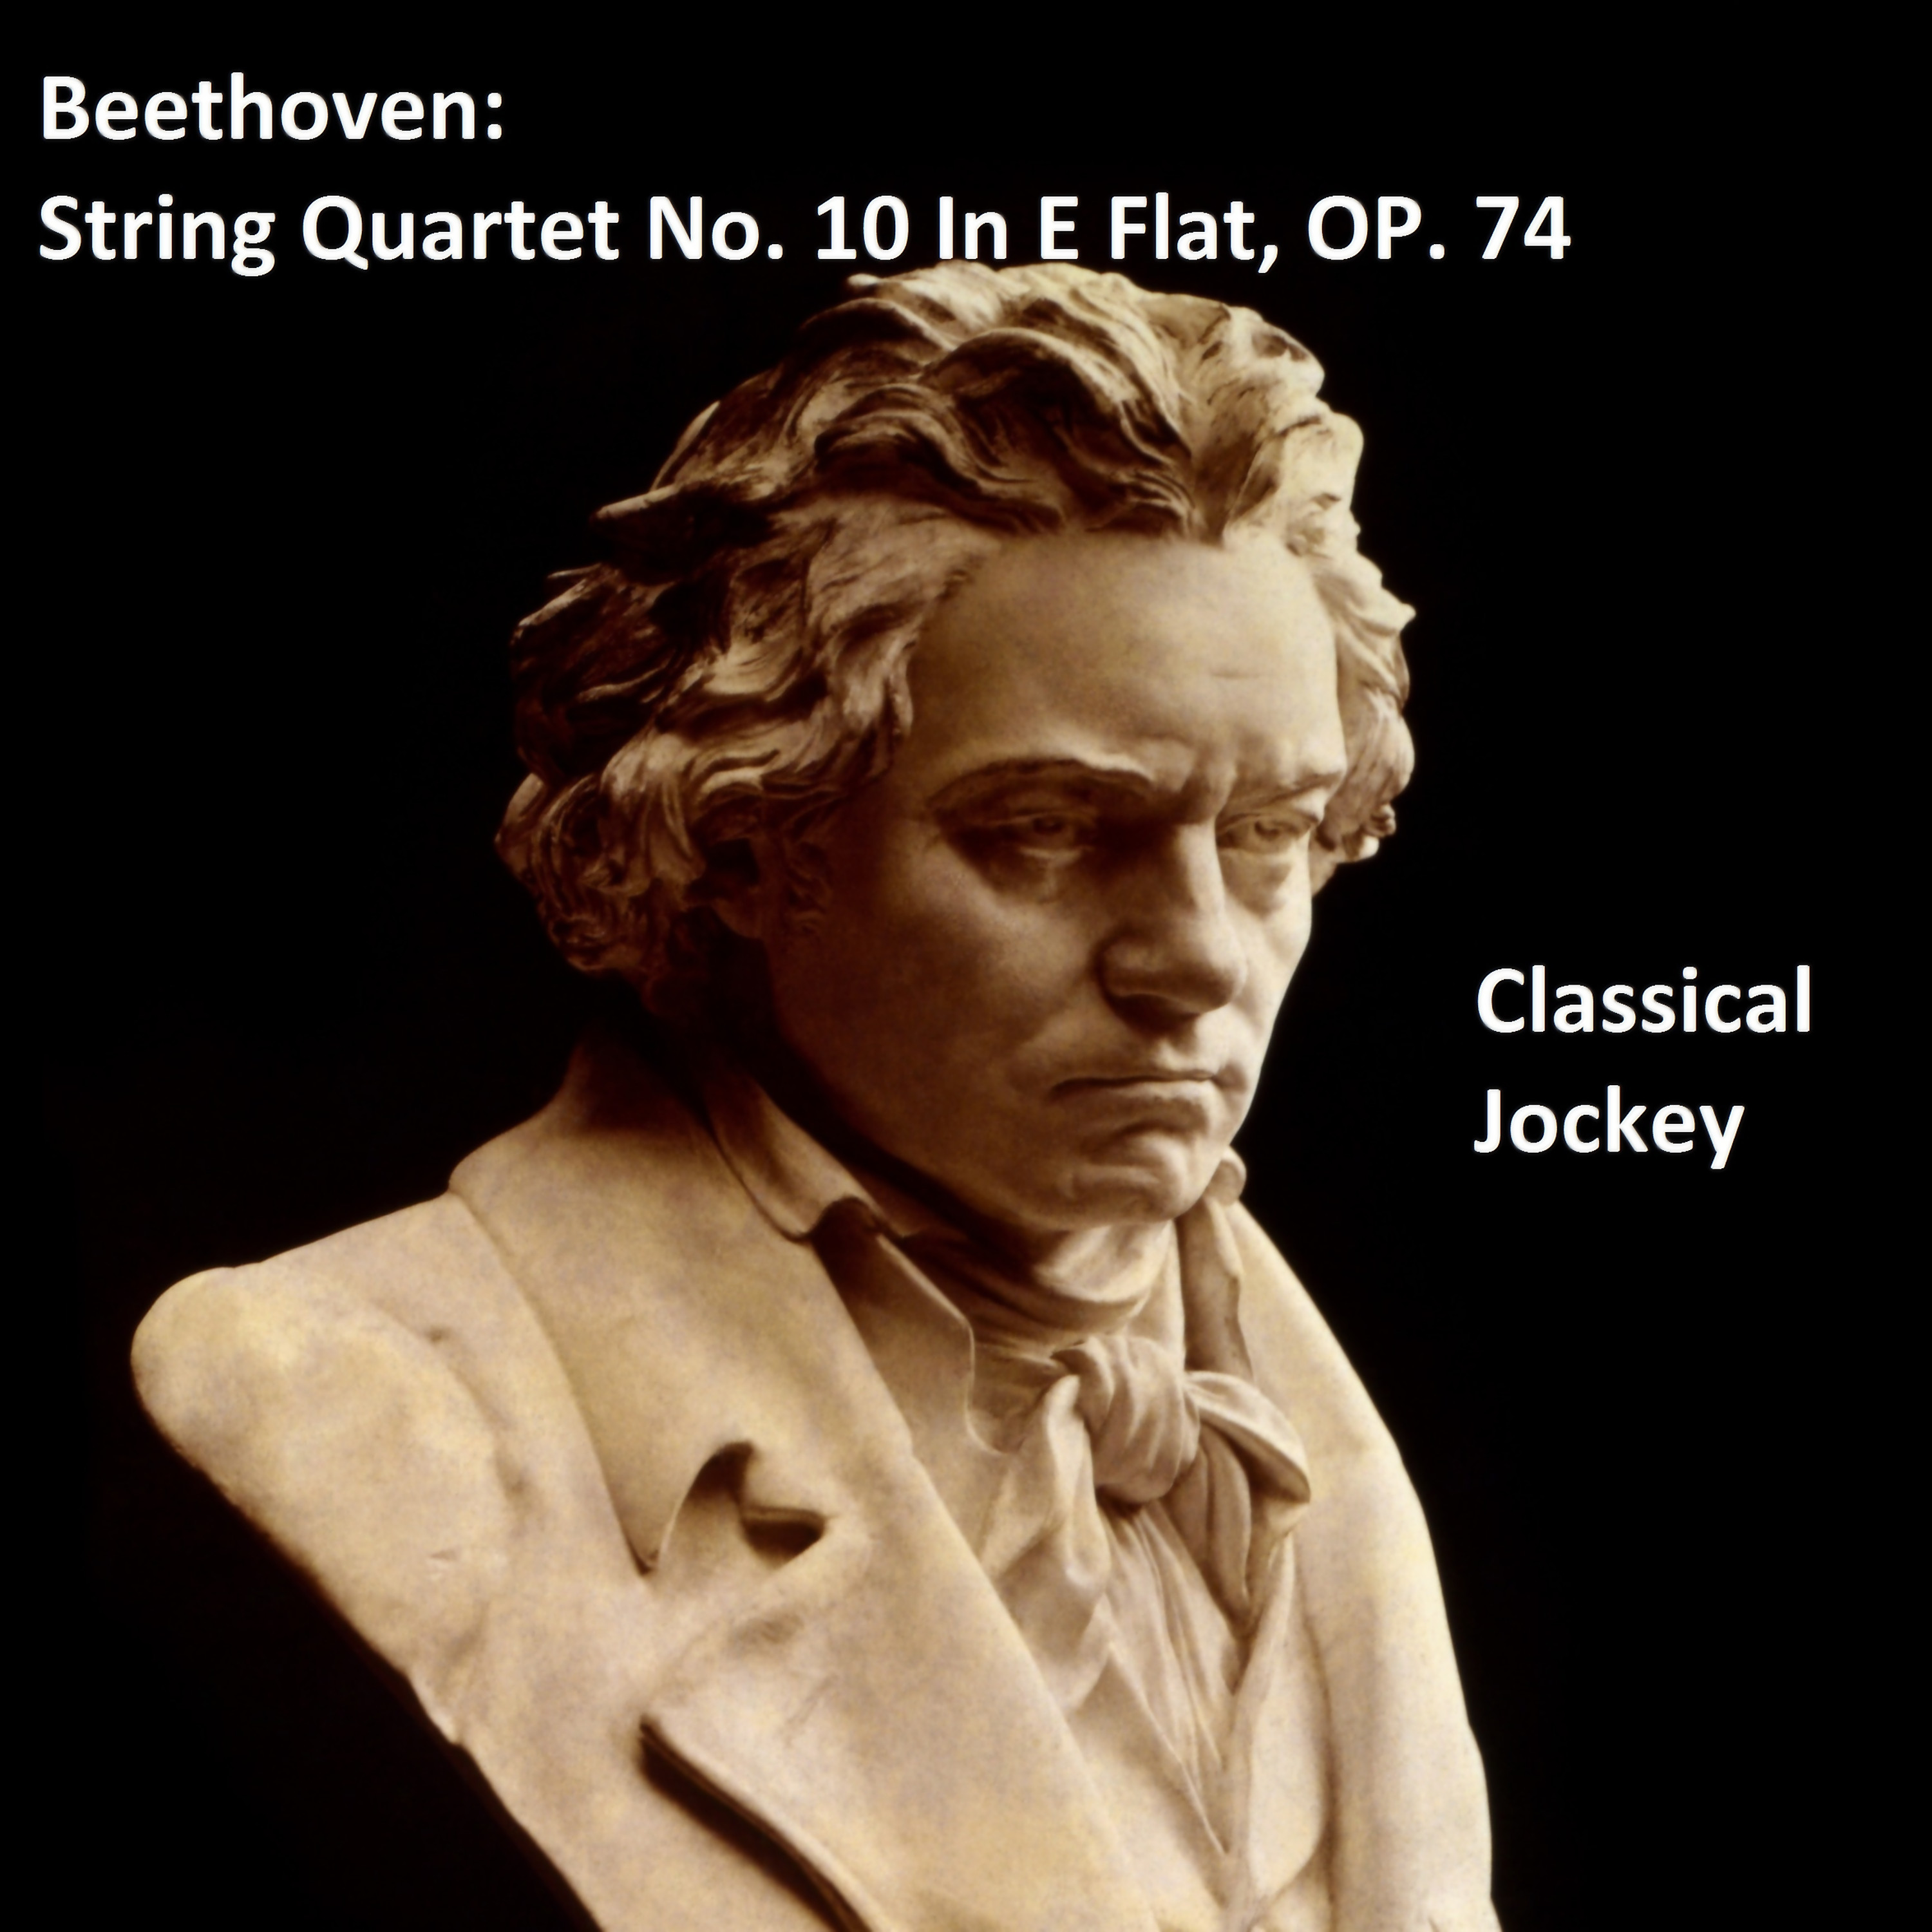 Beethoven: String Quartet No. 10 In E Flat, Op. 74 - Presto - Piu presto quasi prestissimo